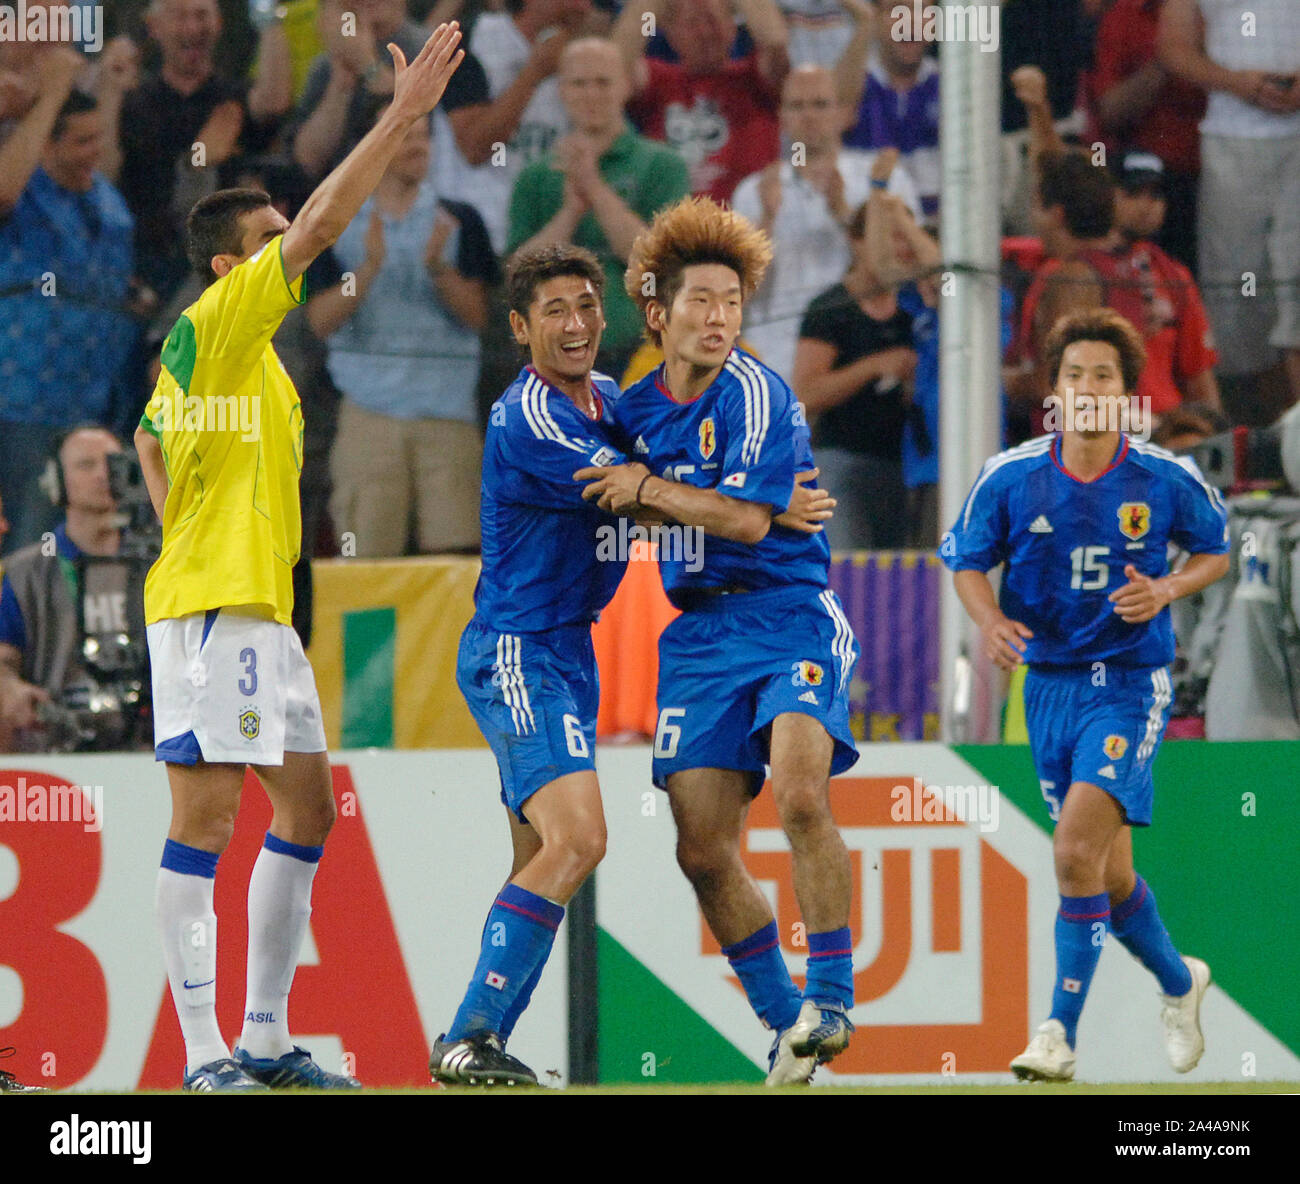 Stade FIFA Cologne Allemagne 22.06.2005, Football : Coupe des Confédérations au Japon (JPN, bleu) vs Brésil (BRA, jaune) 2:2 ; Koji NAKATA célèbre le but de Masashi OGURO (JPN) Banque D'Images